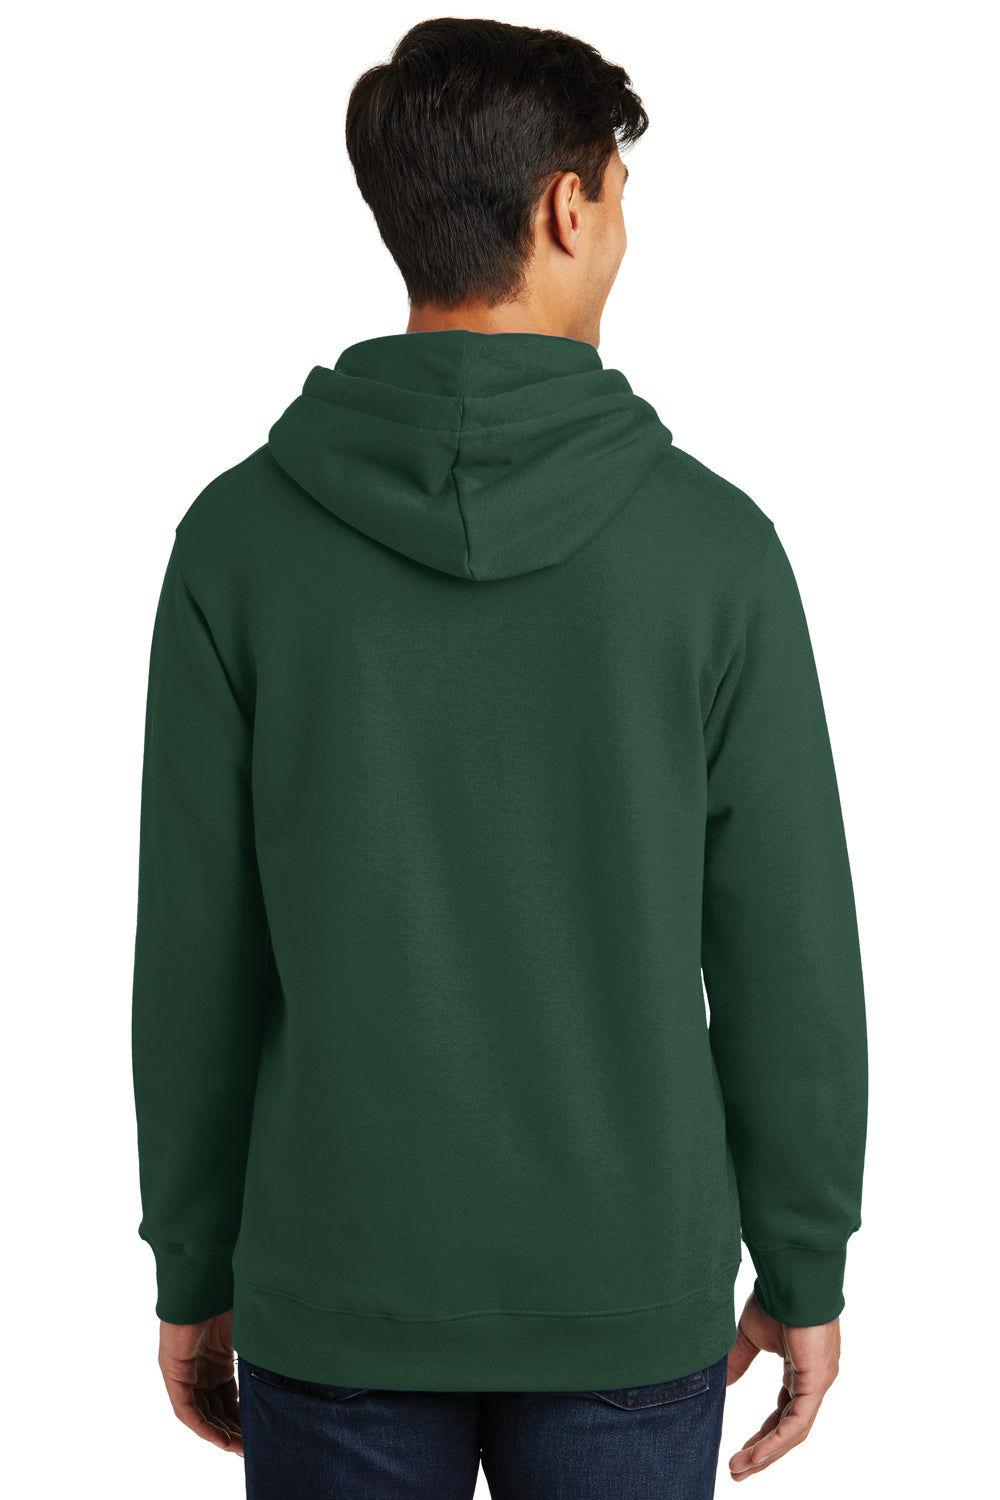 Port & Company PC850H Mens Fan Favorite Fleece Hooded Sweatshirt Hoodie Forest Green Back